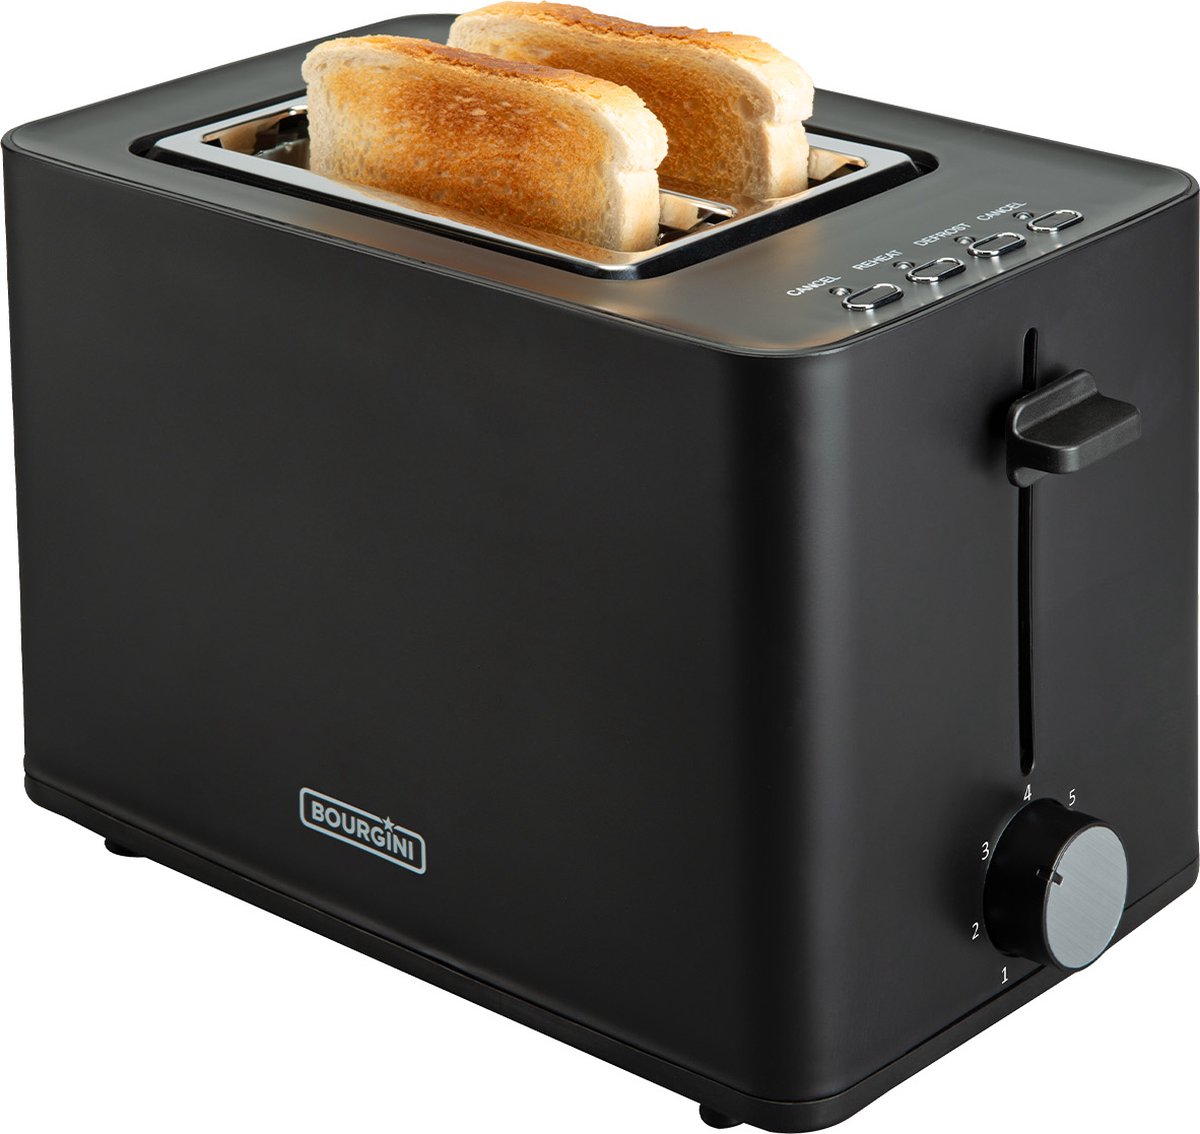 Bourgini Tosti Toaster - Broodrooster met Tostiklemmen - Zwart- Extra brede sleuf geschikt voor 2 tosti's - Instelbare bruiningsstand en ontdooifunctie - Bourgini